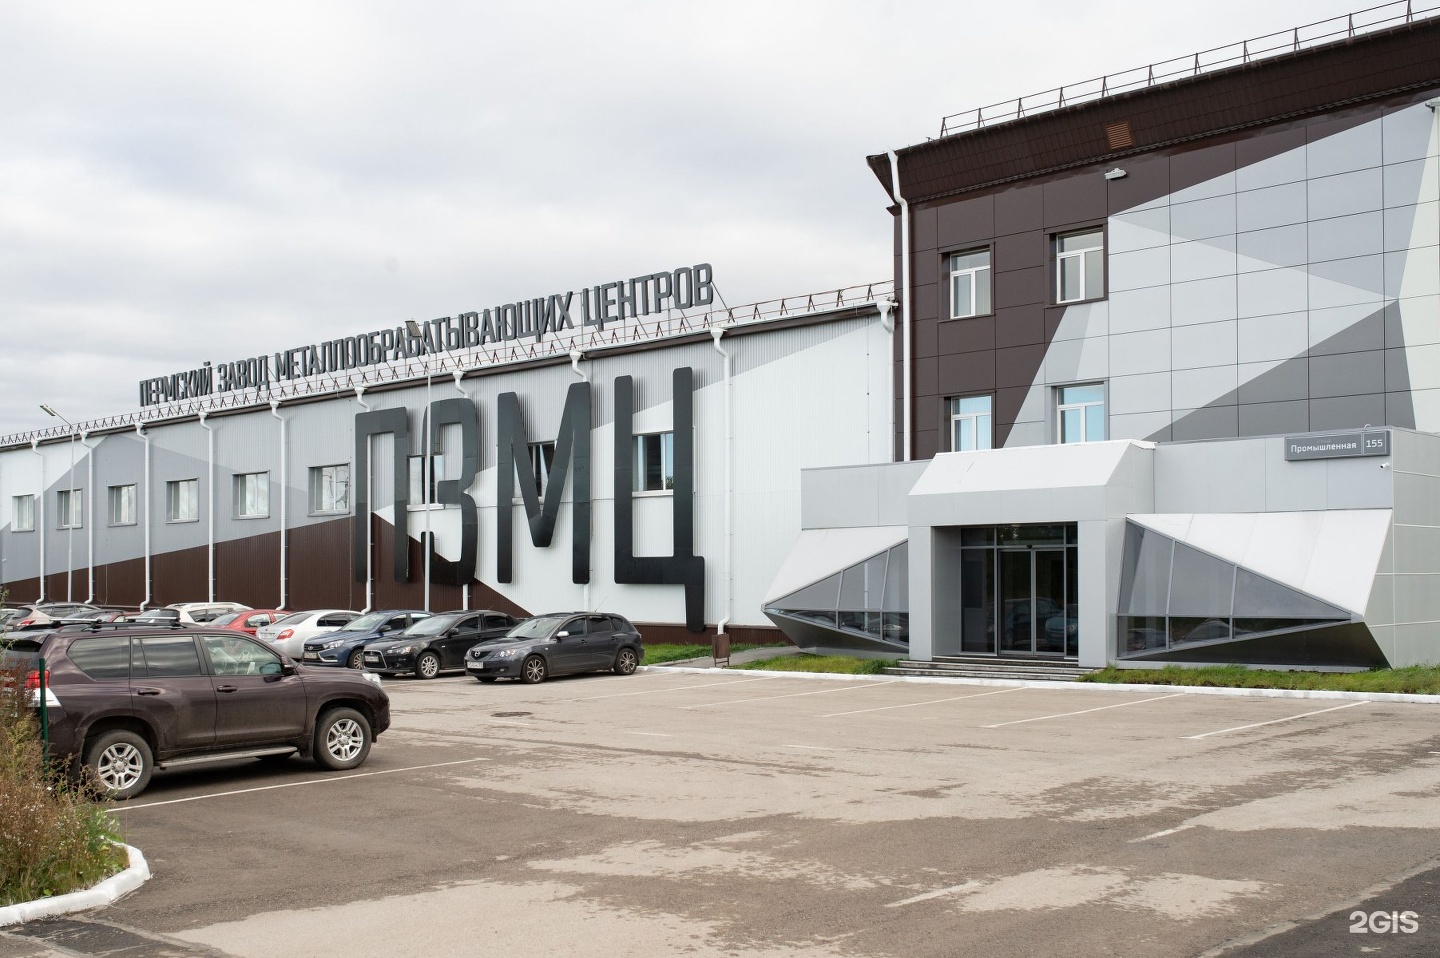 Пермский завод металлообрабатывающих центров